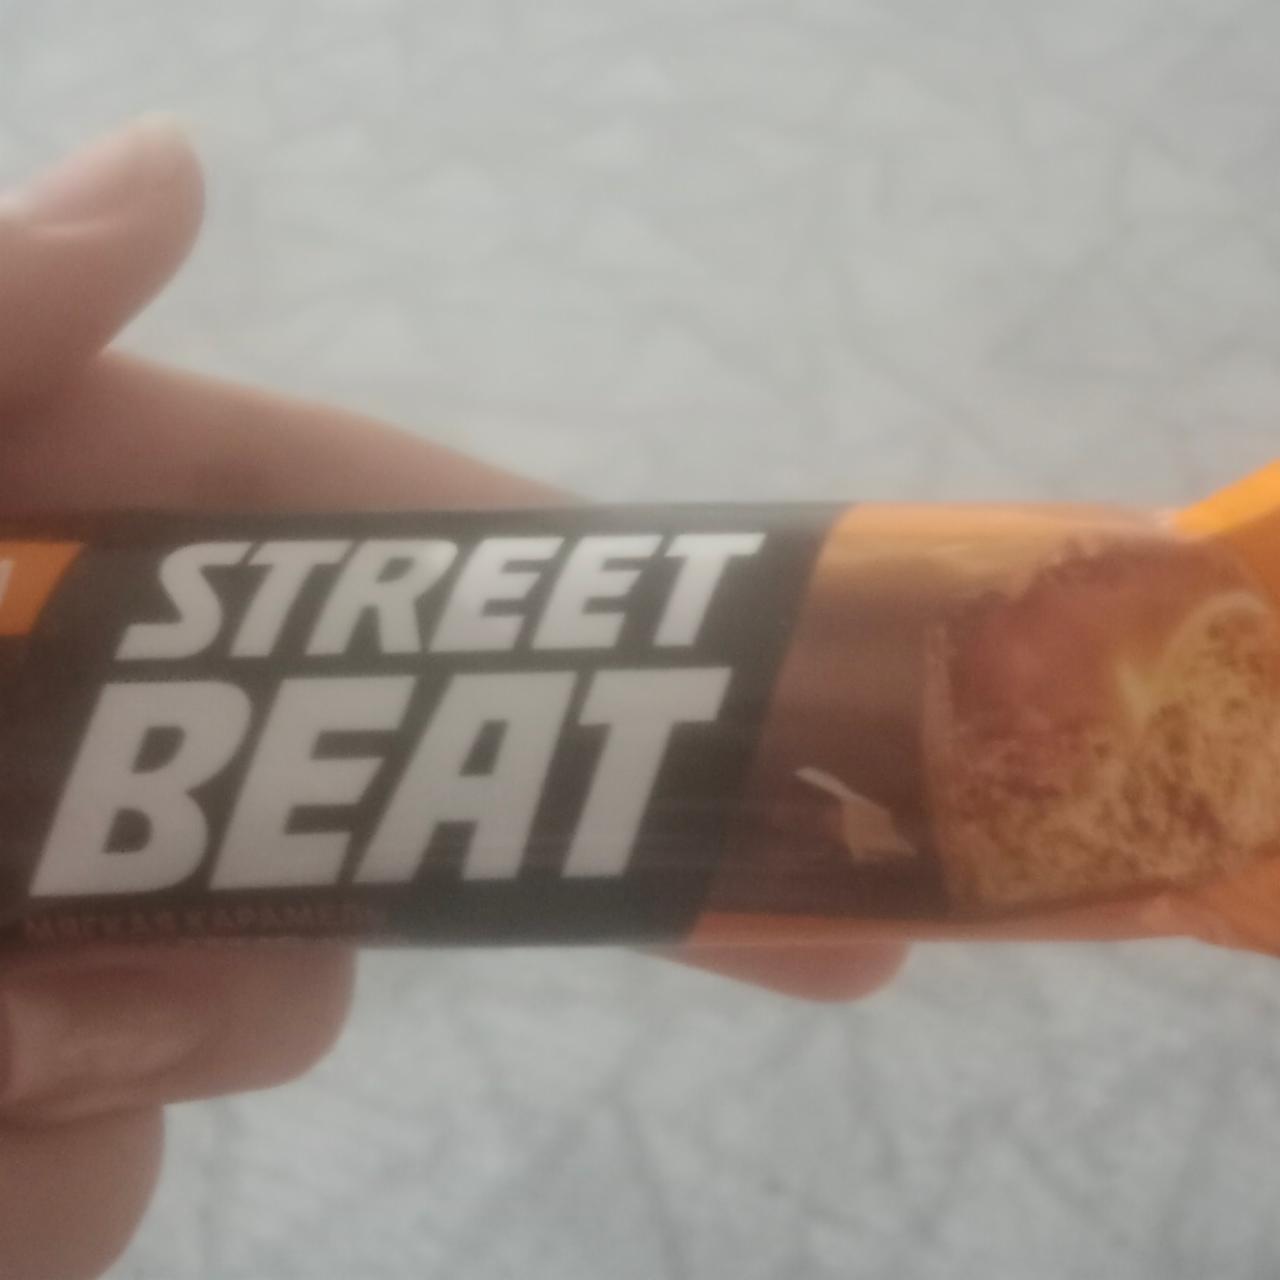 Фото - Street beat